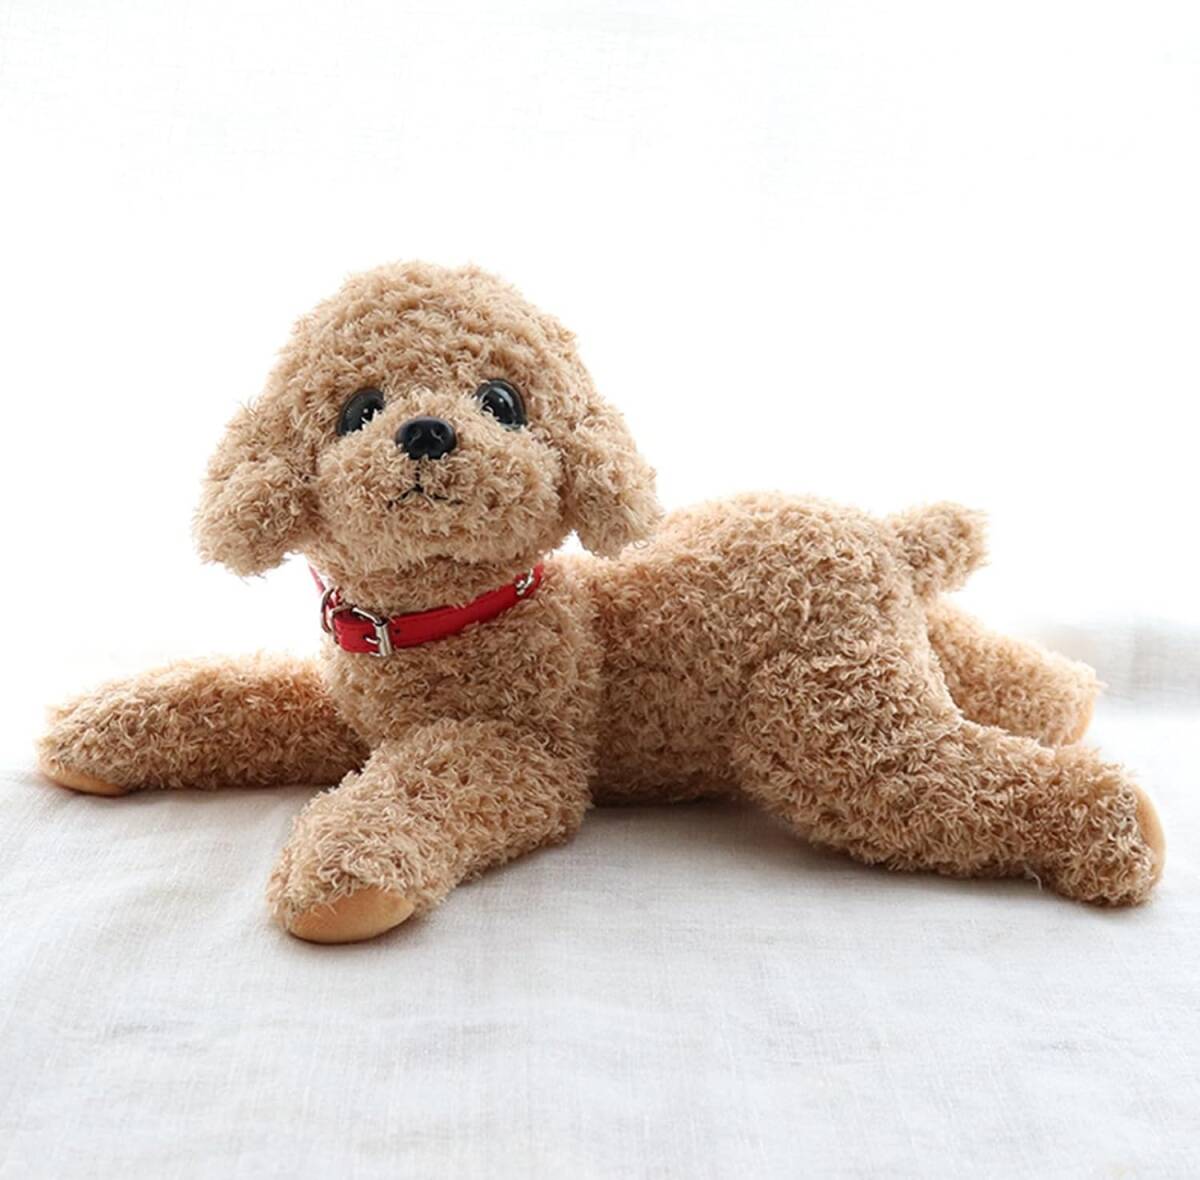 Khakifarbenes Pudel-Plüschtier, 35 cm, realistisch, lebensecht, handgefertigt, weich anzufassen, süßes und entspannendes Hundepudel-Plüschtier, Spielzeug, Spiel, Andere